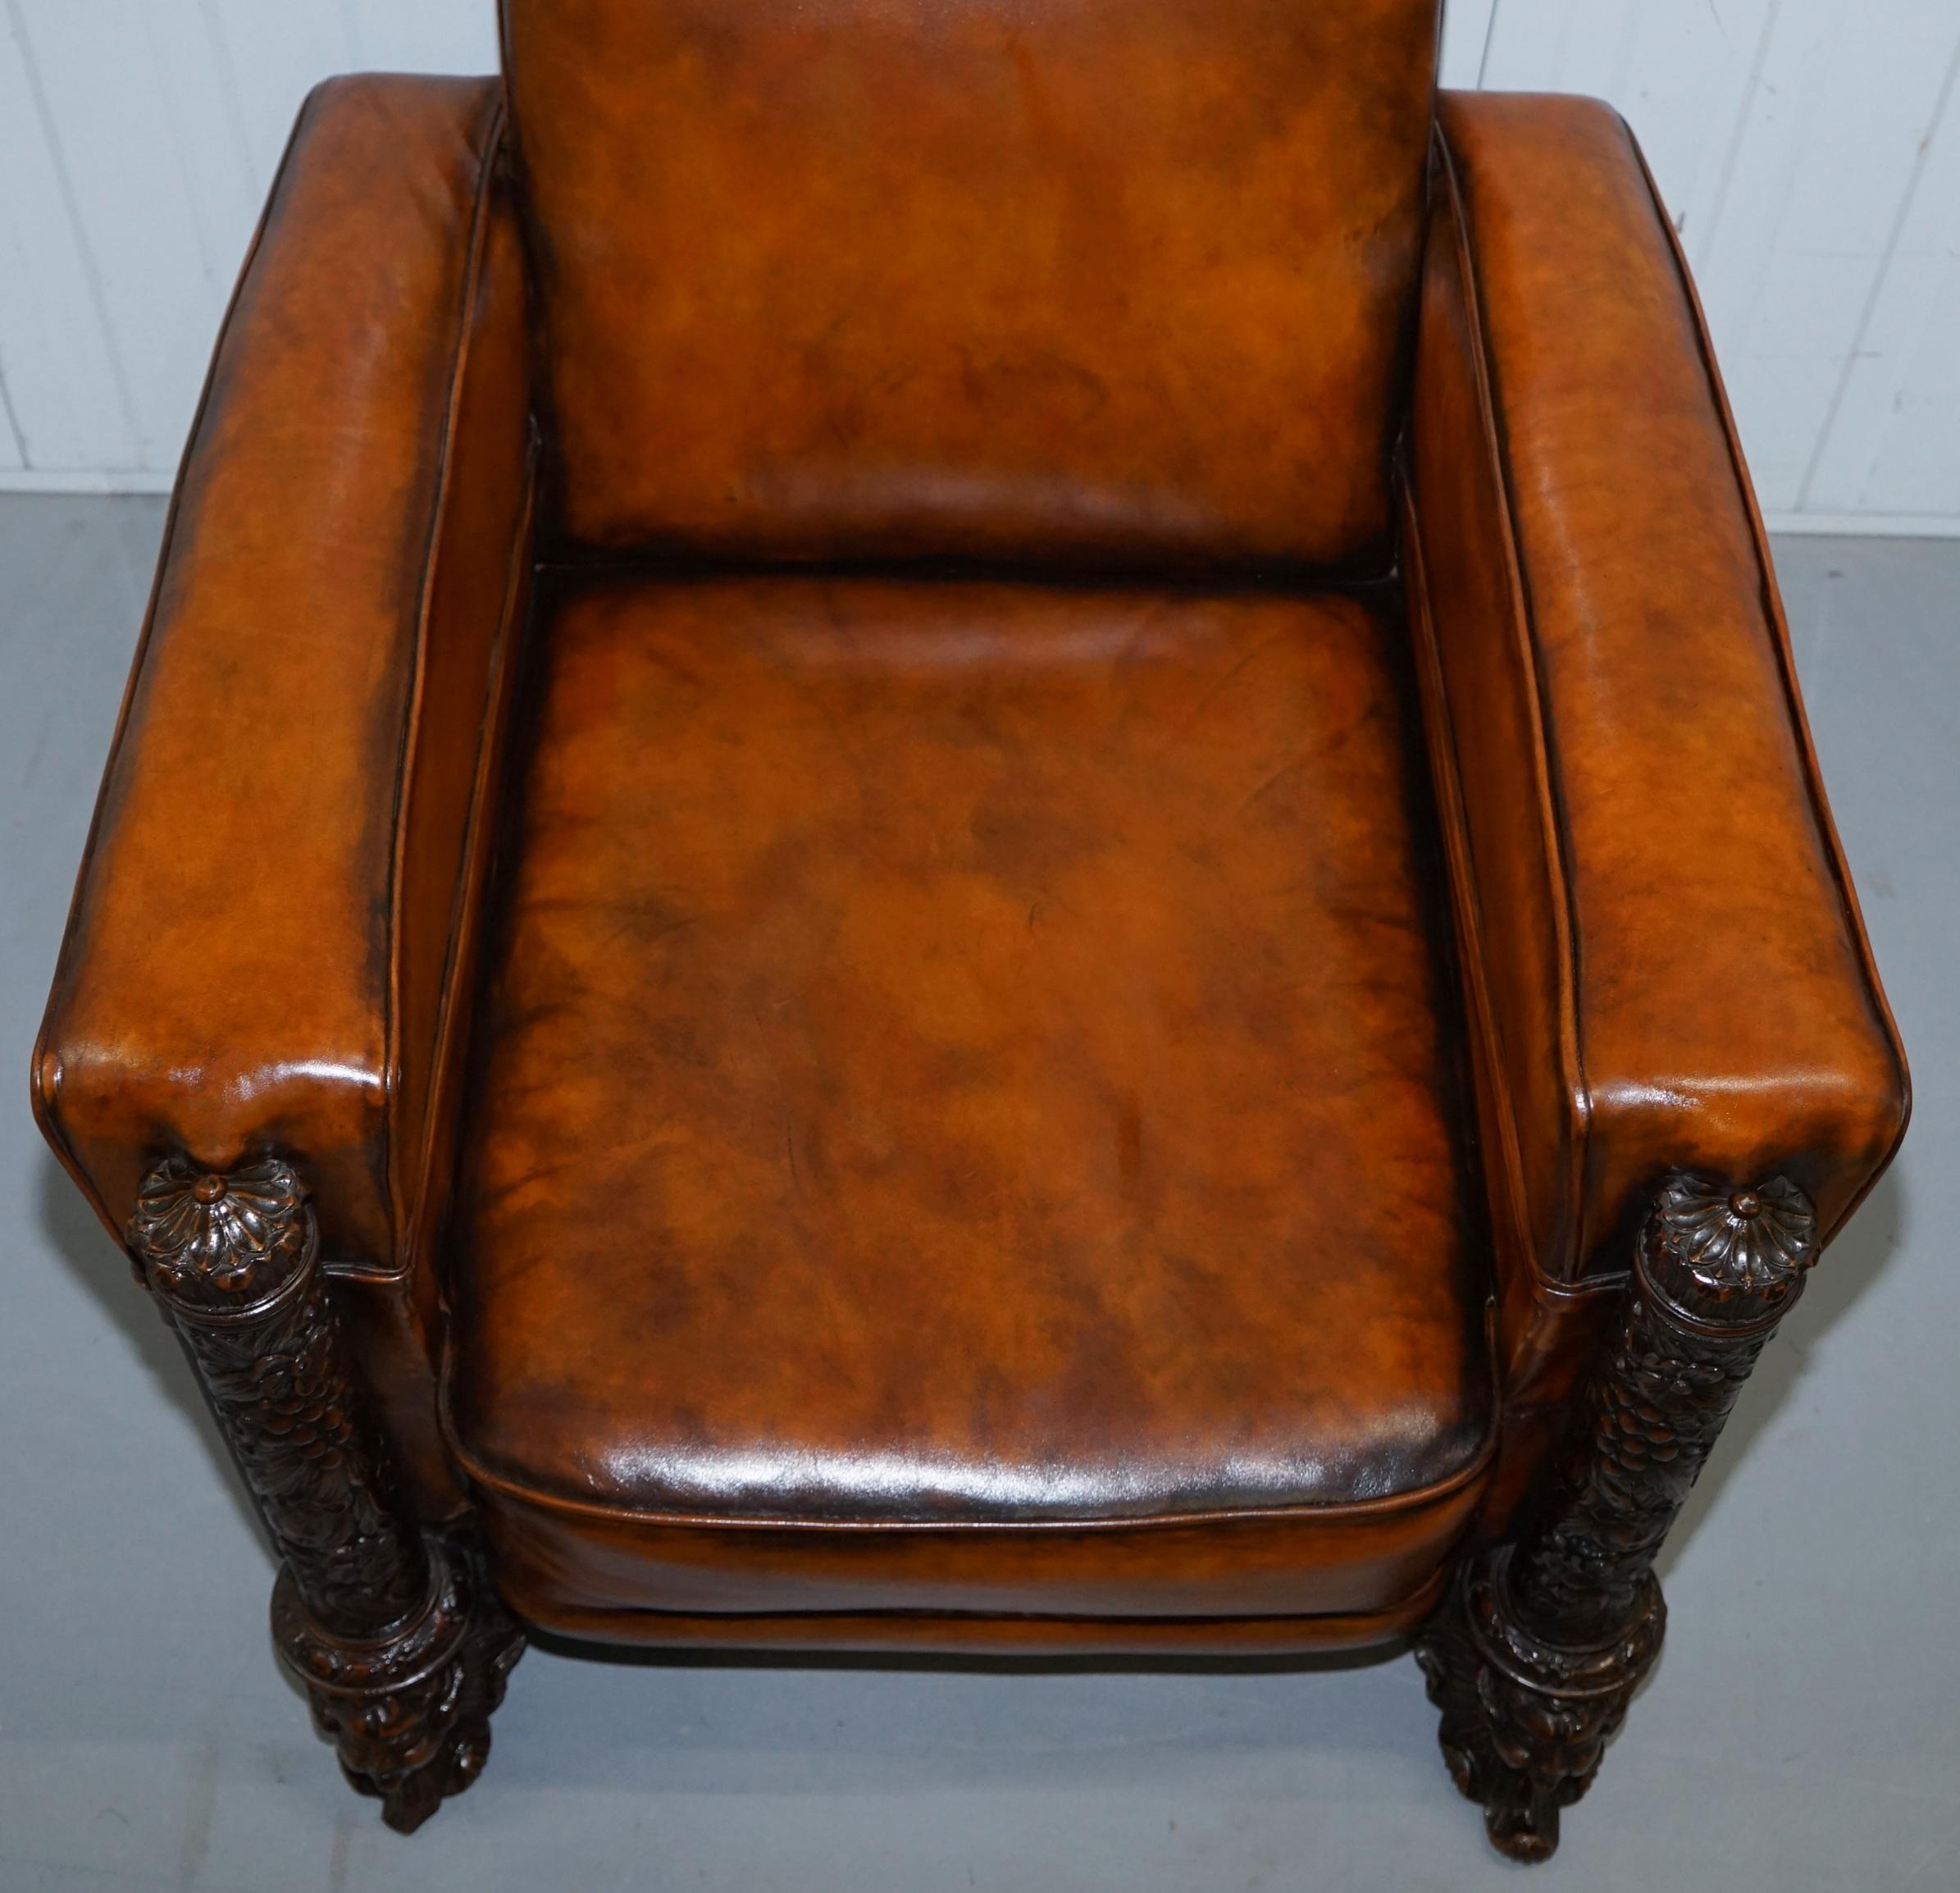 Pair of Victorian Brown Leather Club Armchairs 17th Century Cherub Putti Angels (18. Jahrhundert und früher)